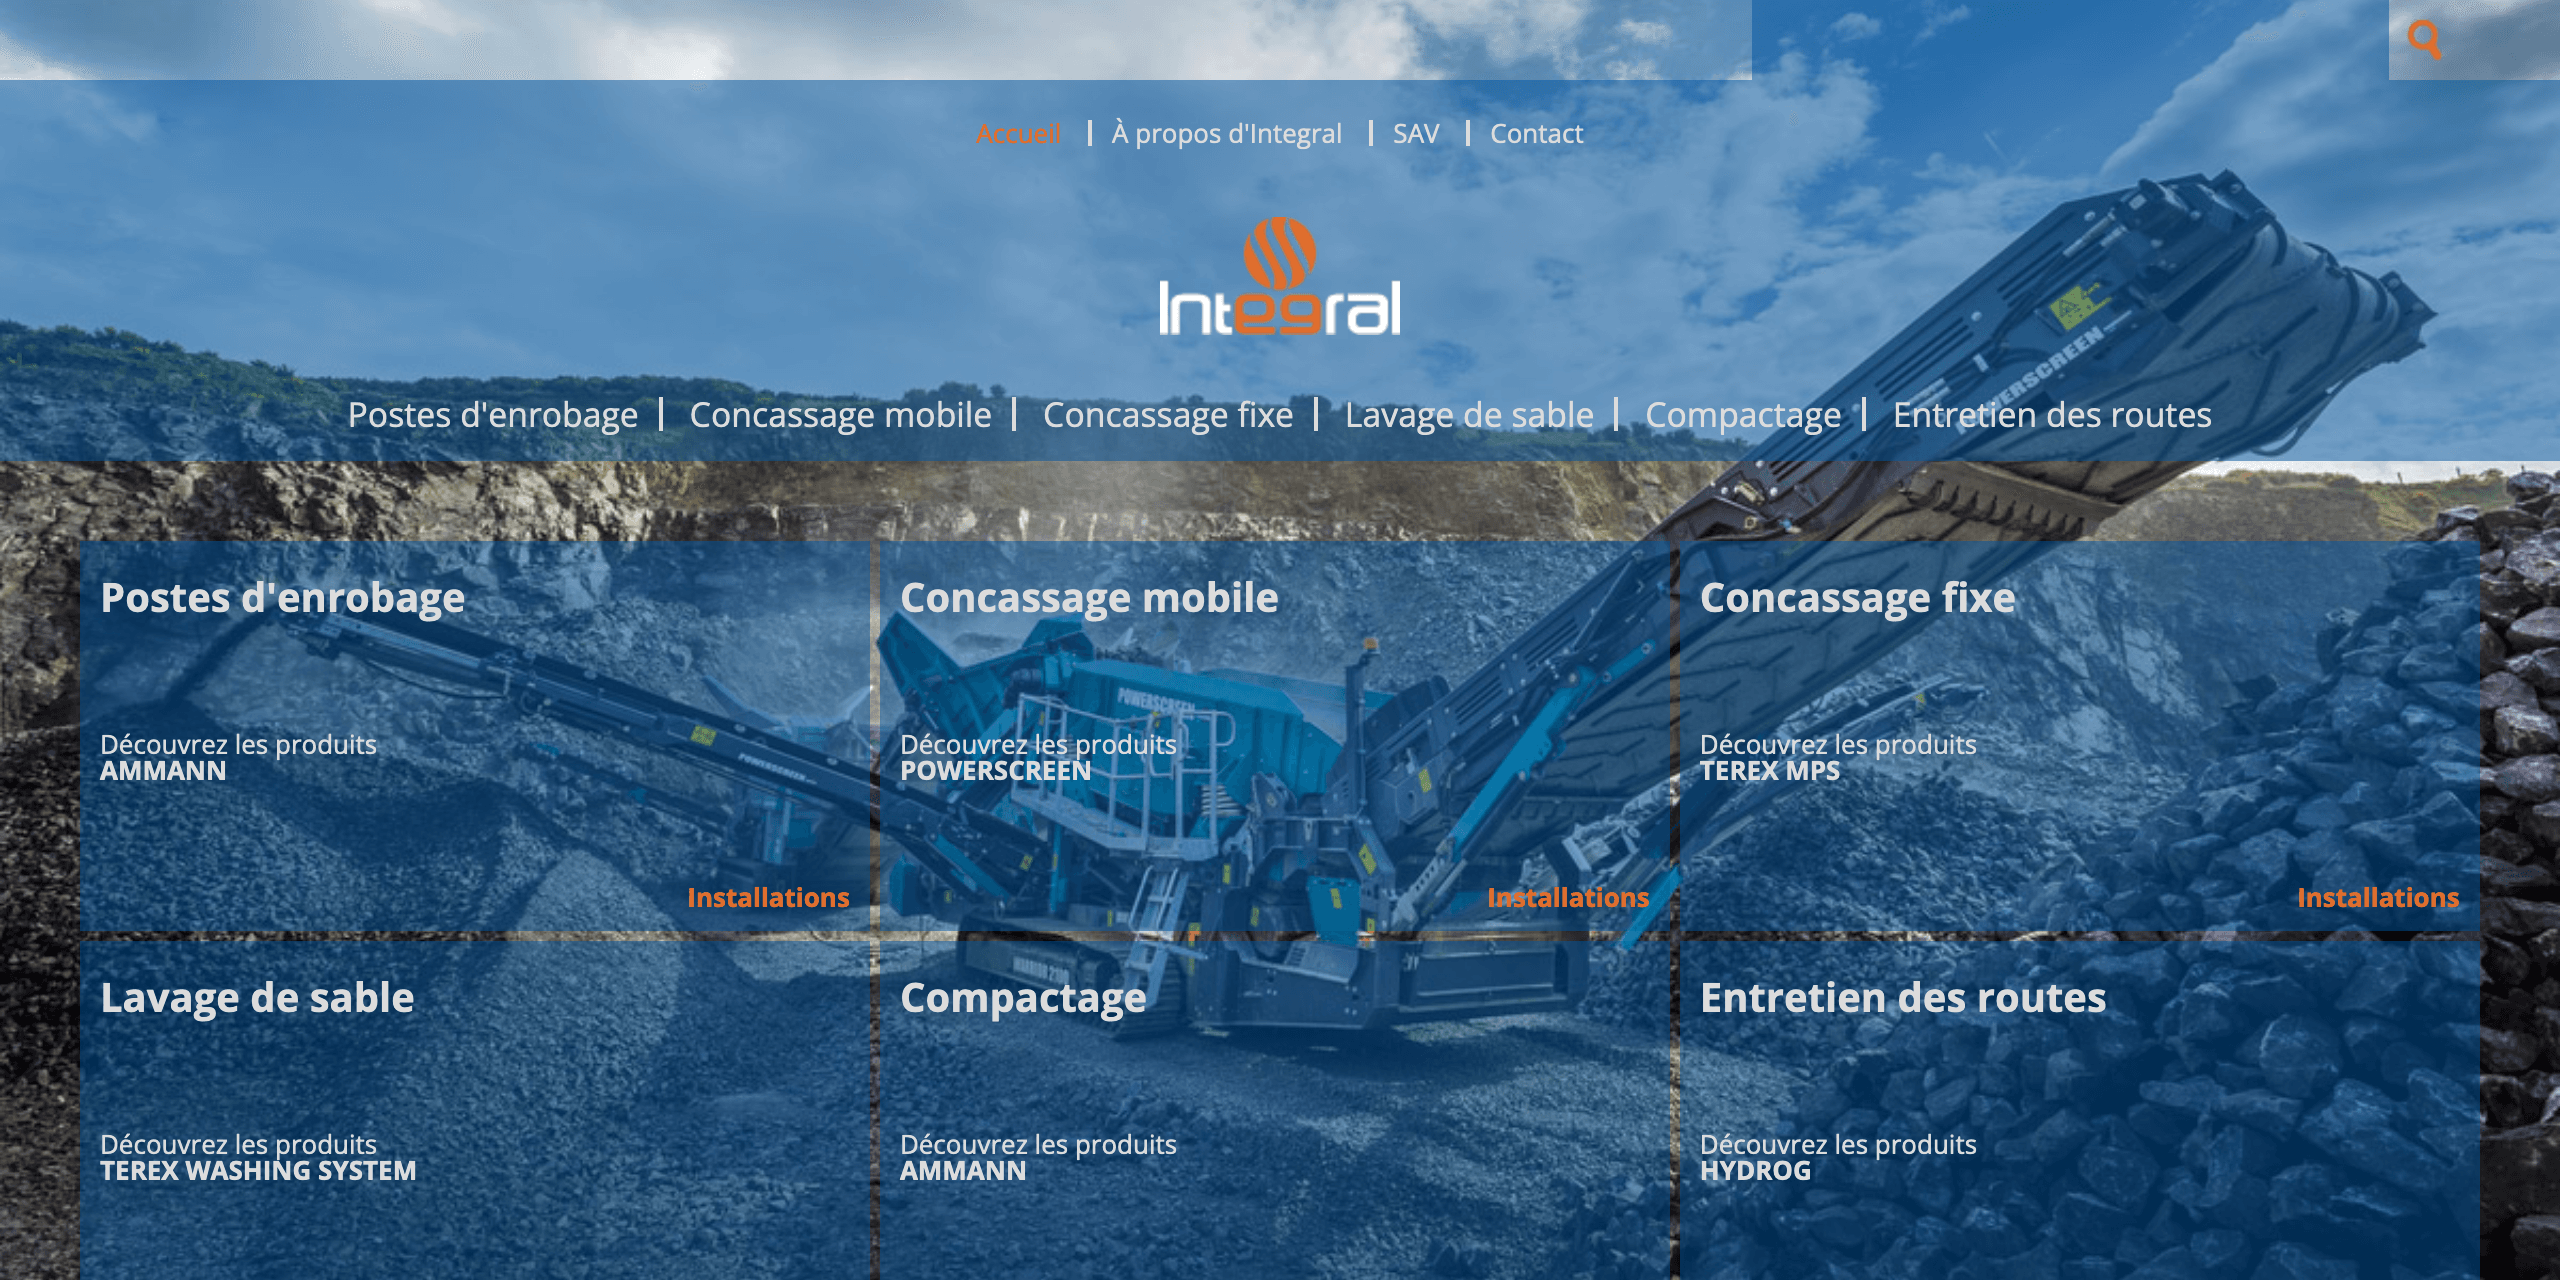 Univerweb a collaboré avec Integral sur sa présence numérique. Nous avons créé le site web.